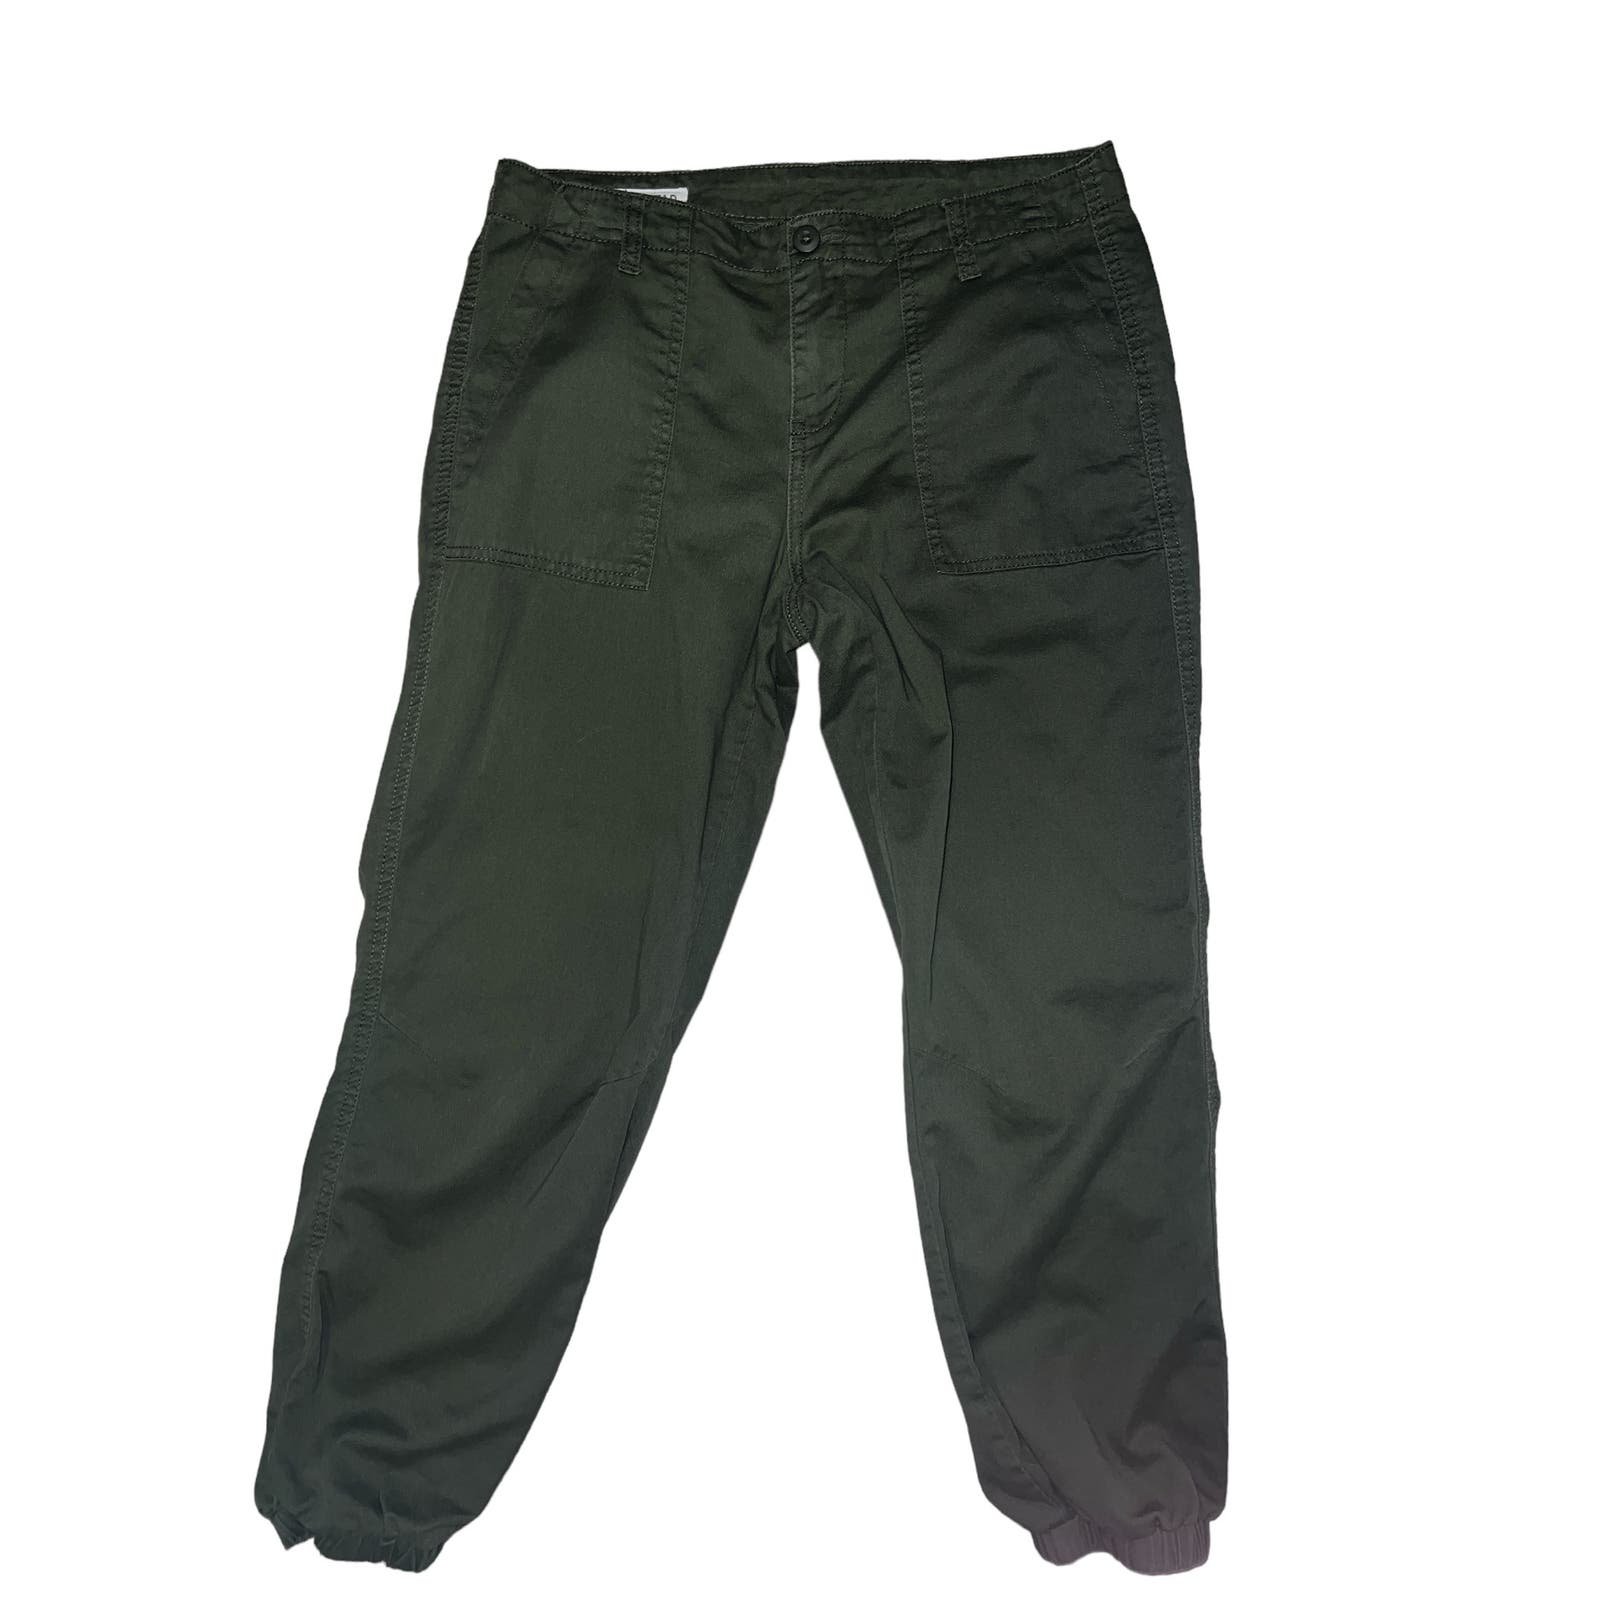 Exclusive Women’s camo green cargo pants size 7 HSmWLSHM7 no tax